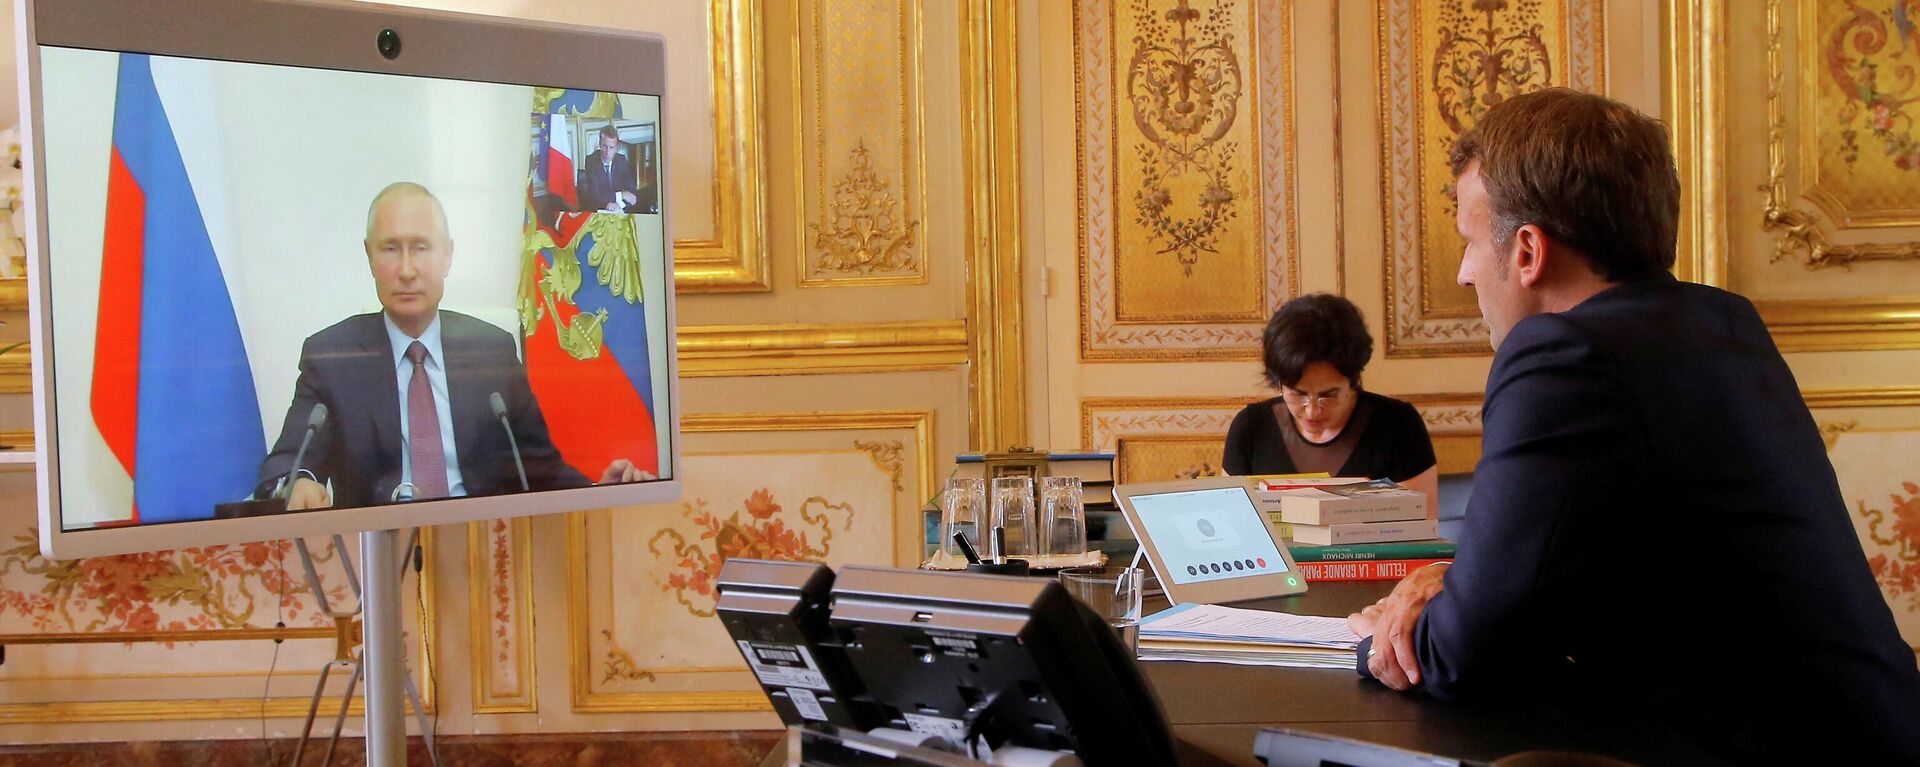 O presidente francês Emmanuel Macron conversa com o presidente russo Vladimir Putin durante uma videoconferência no Palácio do Eliseu em Paris, França, 26 de junho de 2020 - Sputnik Brasil, 1920, 28.01.2022